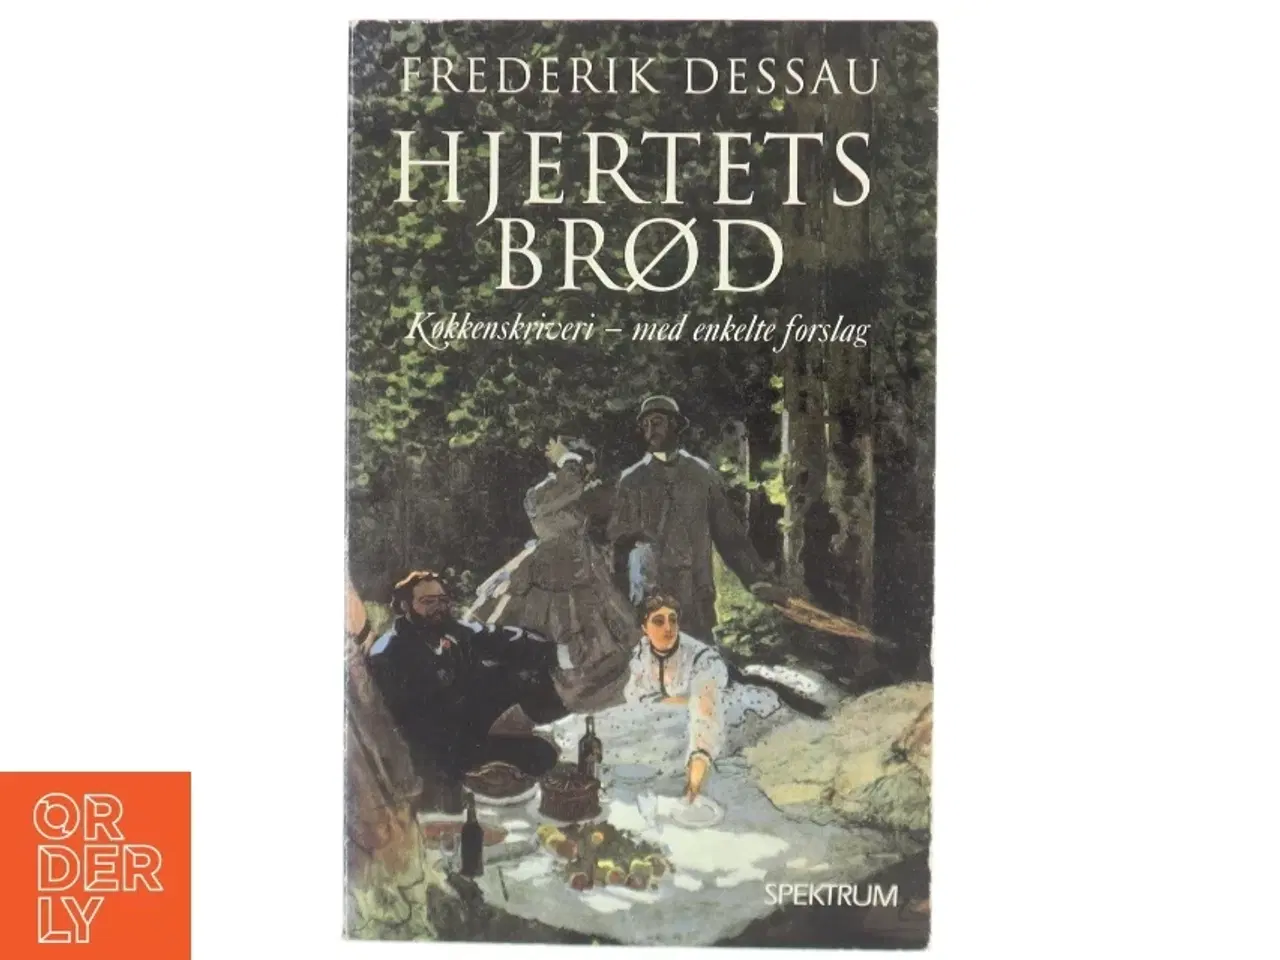 Billede 1 - Hjertets brød : køkkenskriveri - med enkelte forslag af Frederik Dessau (Bog)